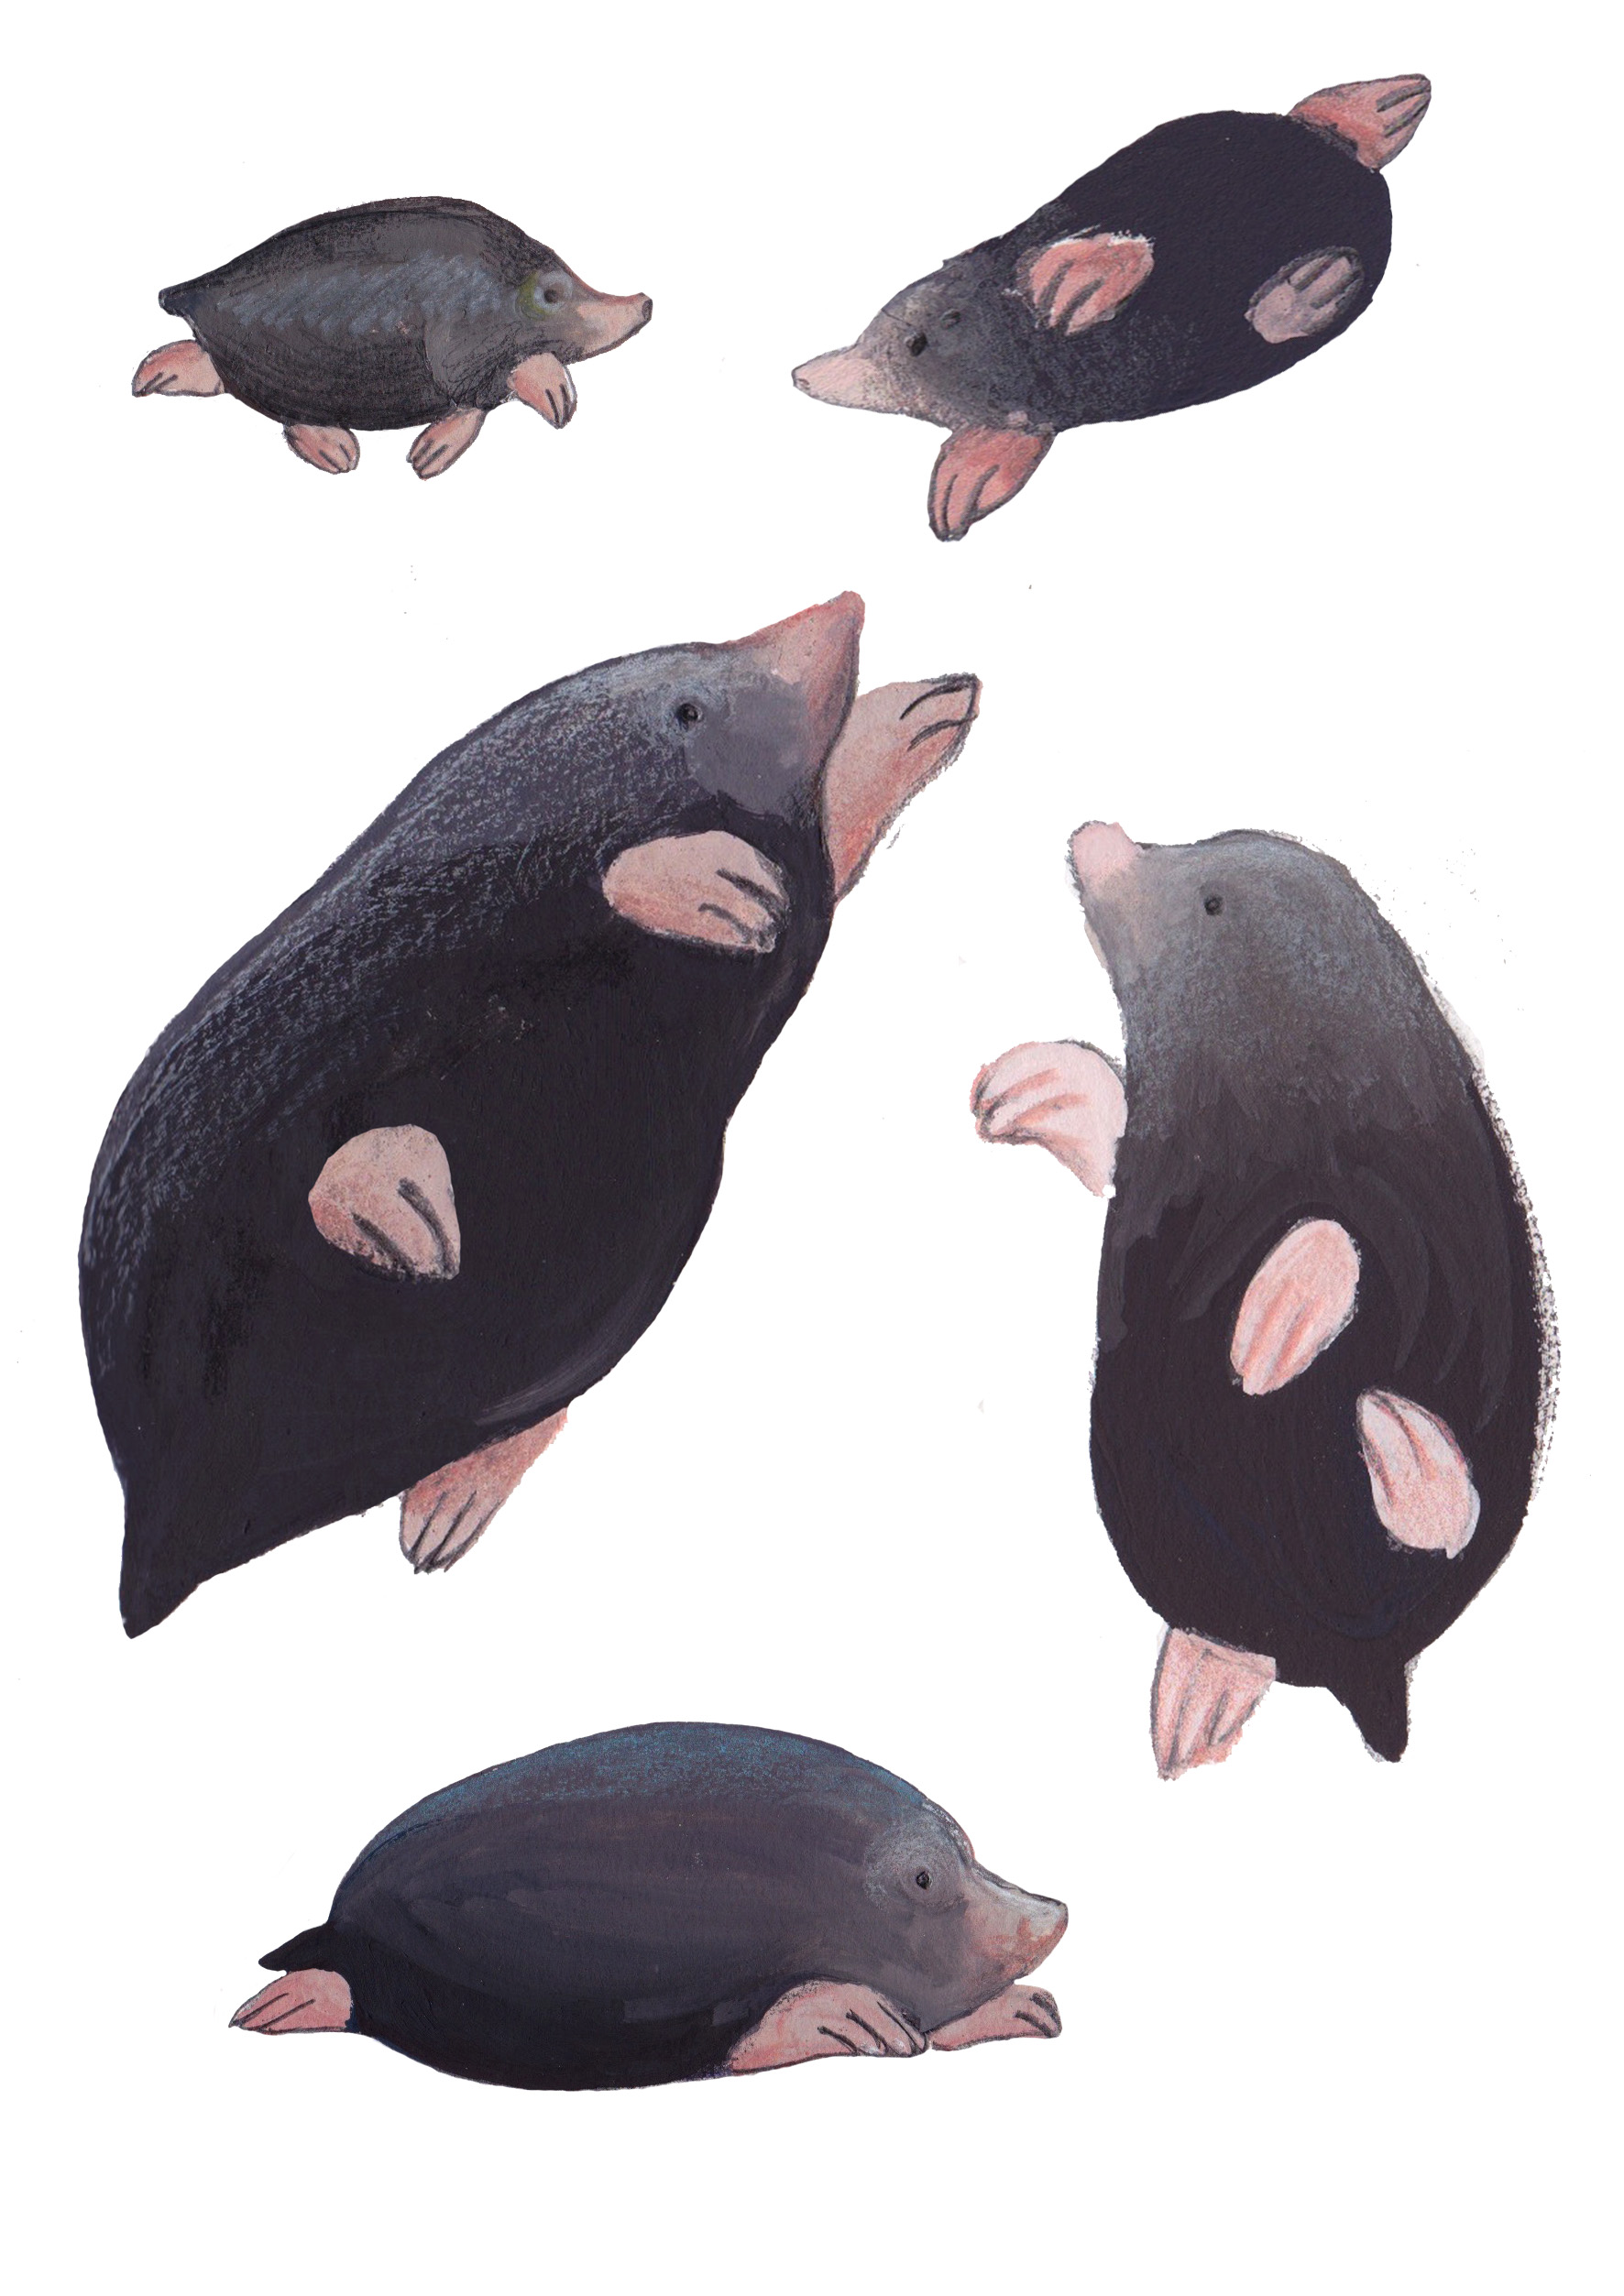 Mole selection